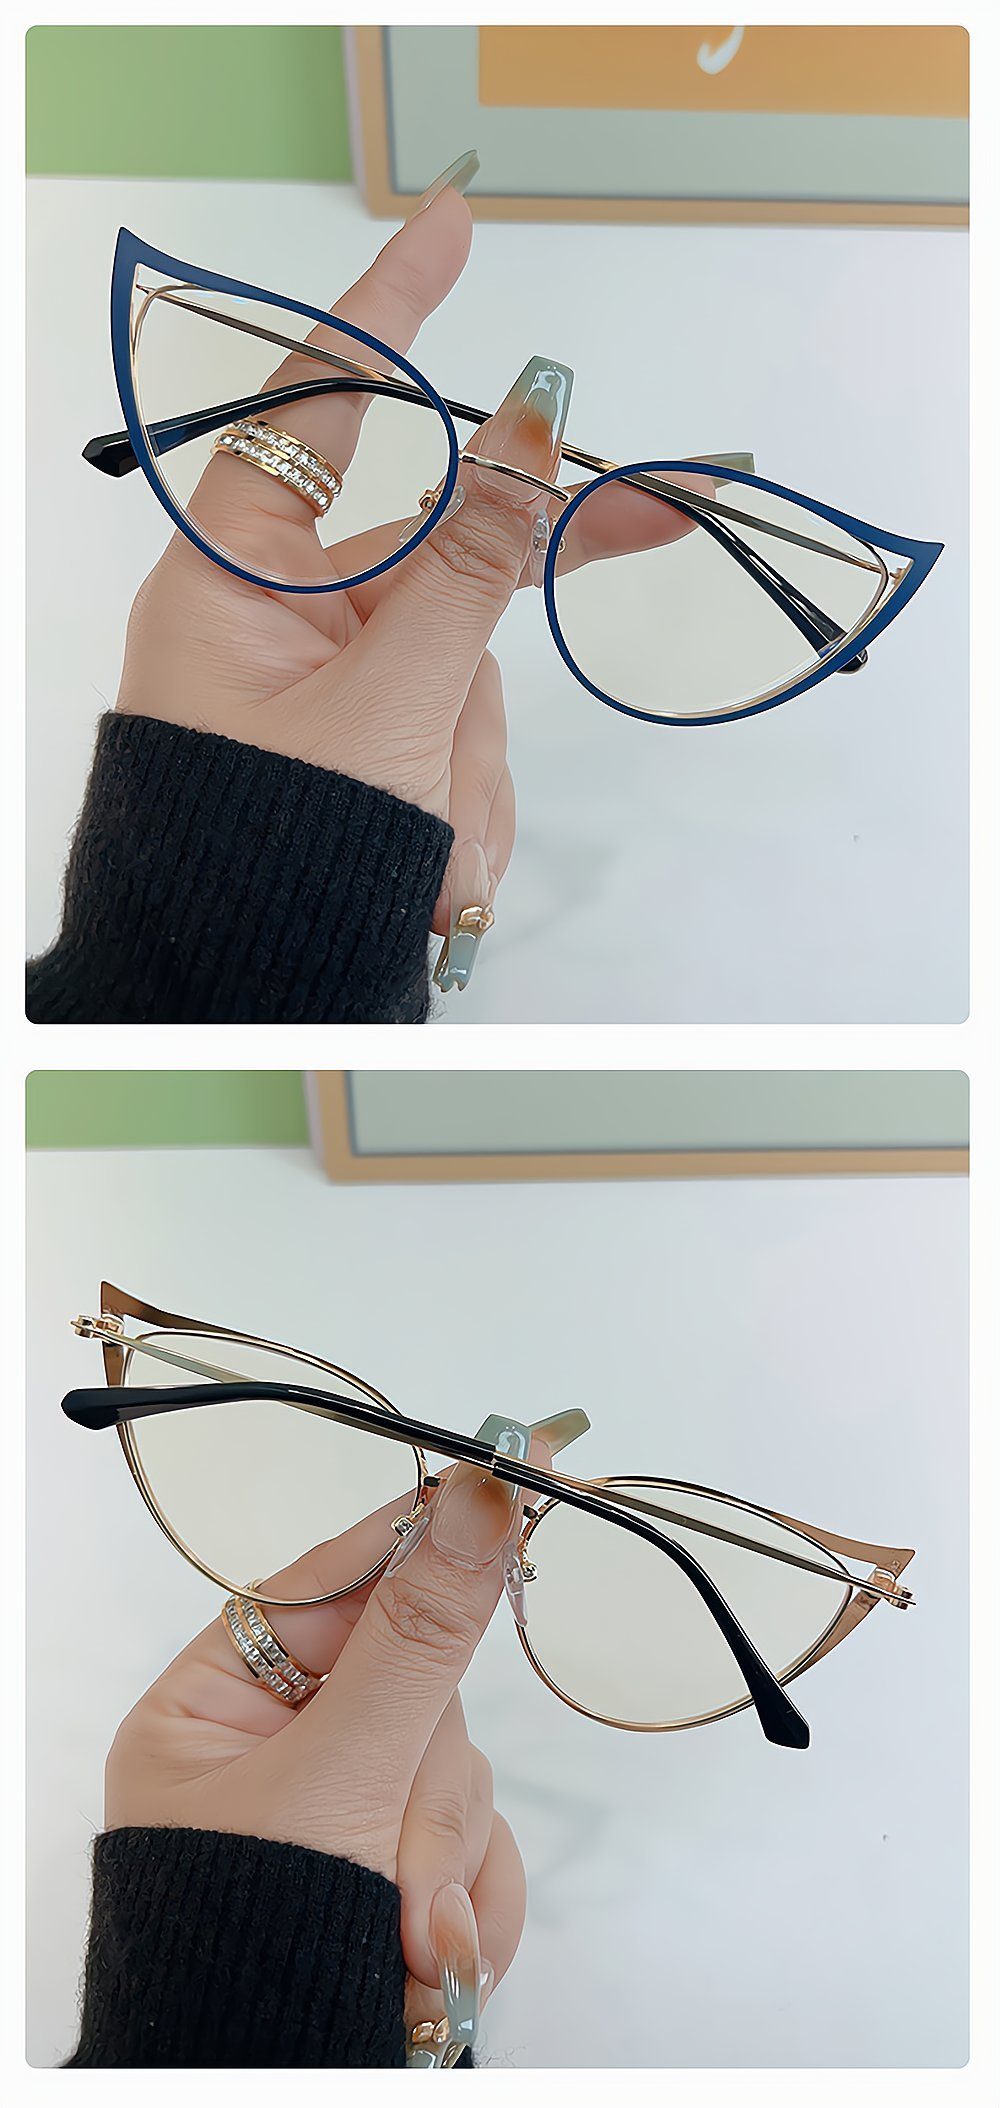 PACIEA Brille Anti blaue Bürobrille Spielbrille Lichtbrille